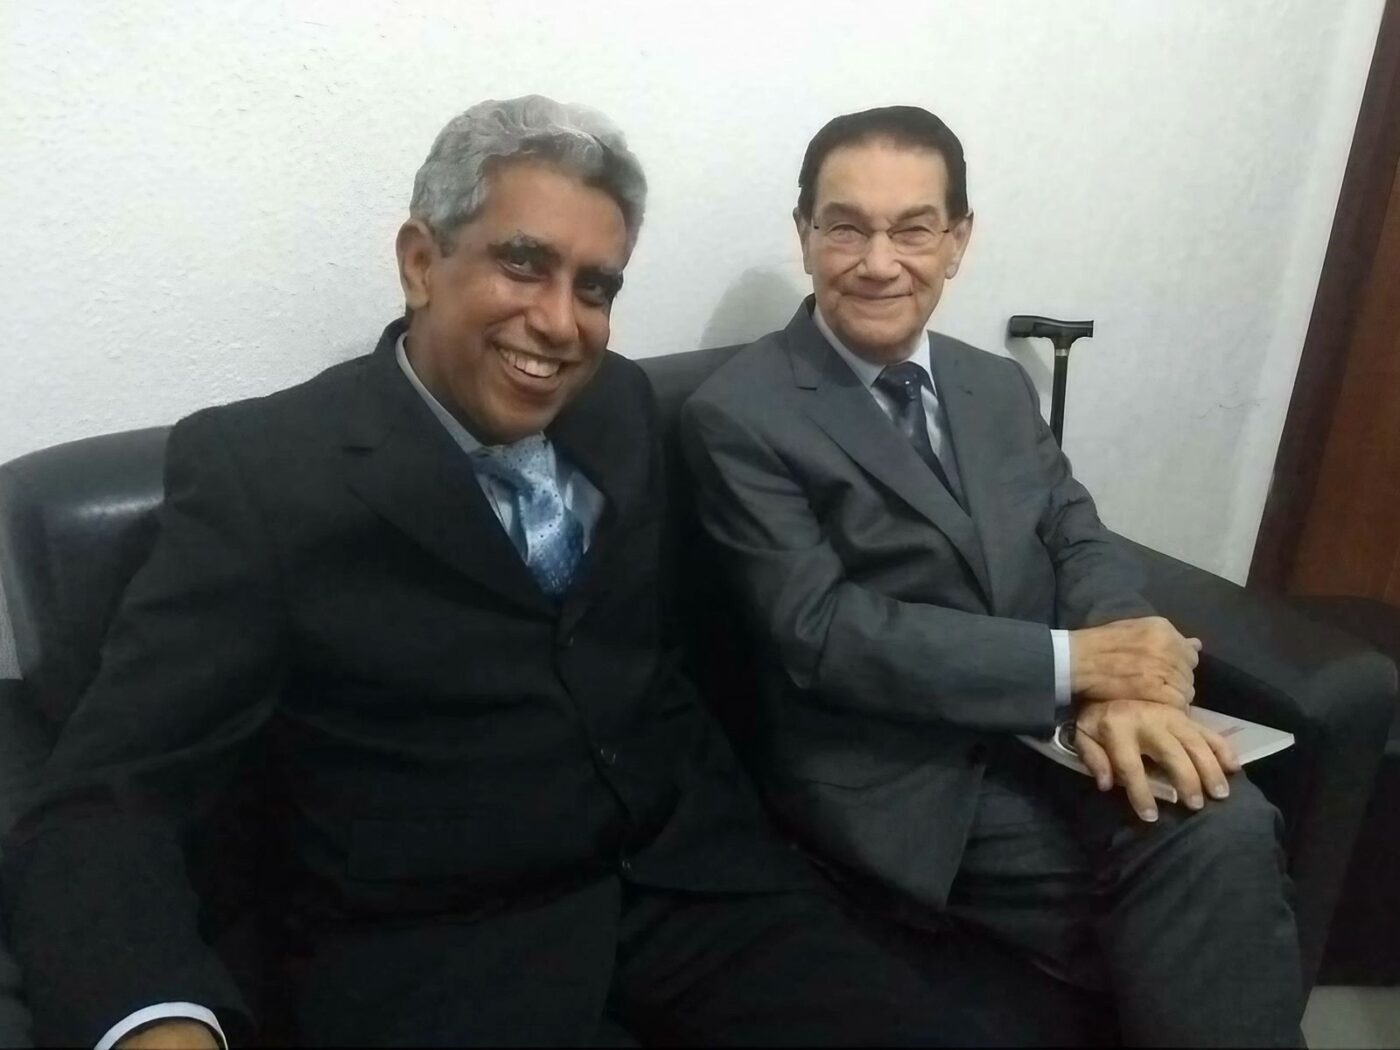 ‘O verdadeiro espírita’, diz Divaldo Franco sobre o amigo André Luiz Peixinho